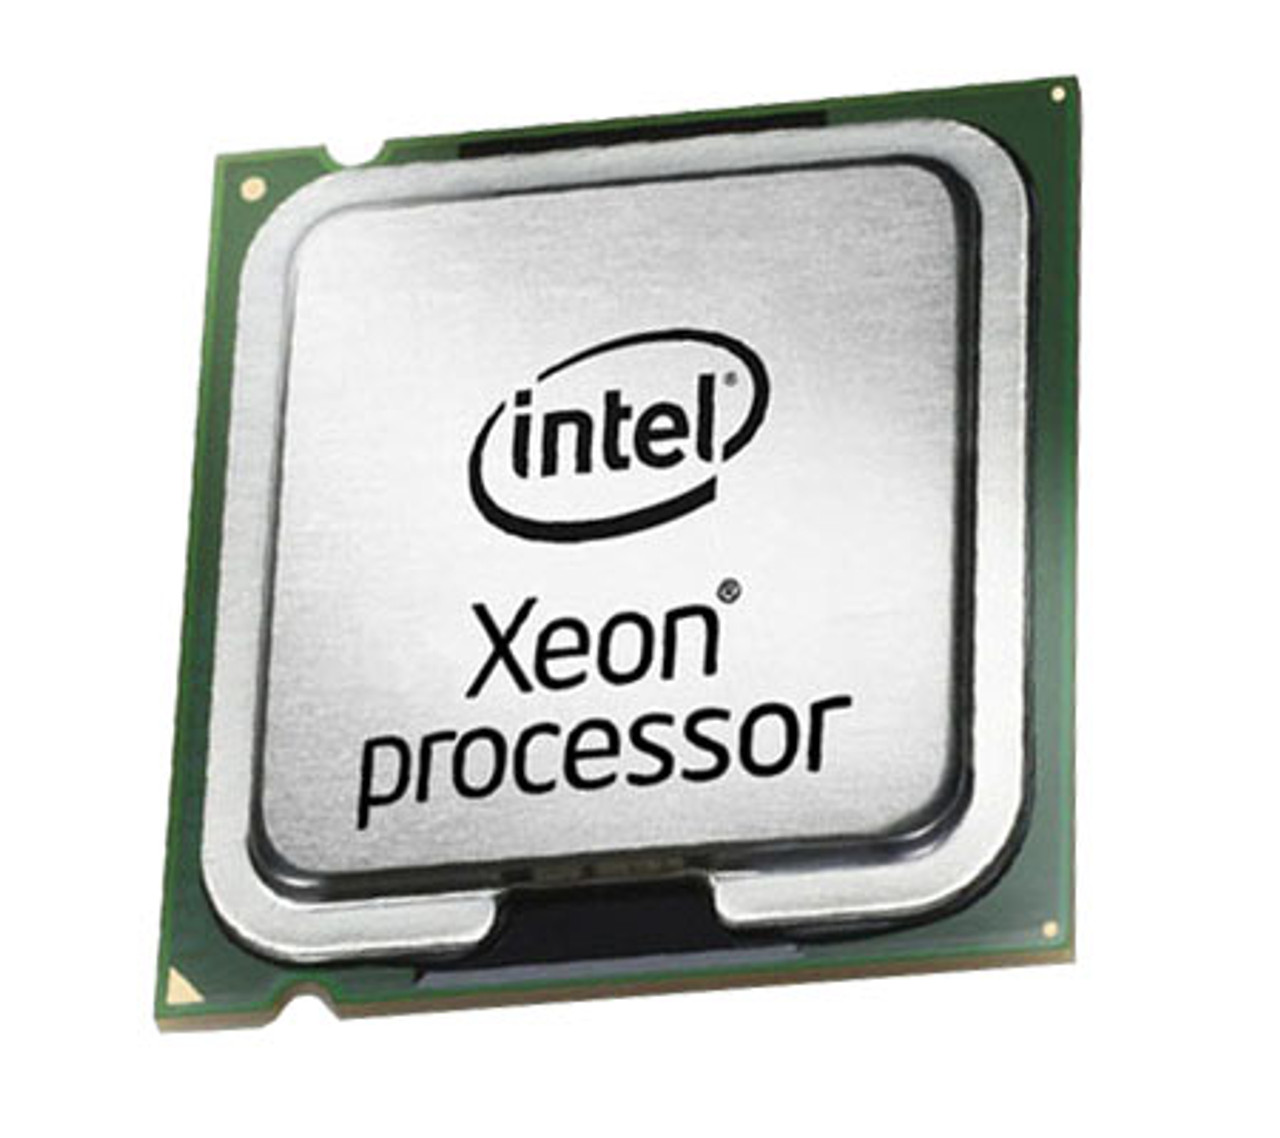 44R5625 - IBM Intel Xeon E5450 Quad Core 3.0GHz 12MB L2 Cache 1333MHz FSB Socket LGA771 45NM 80W Processor